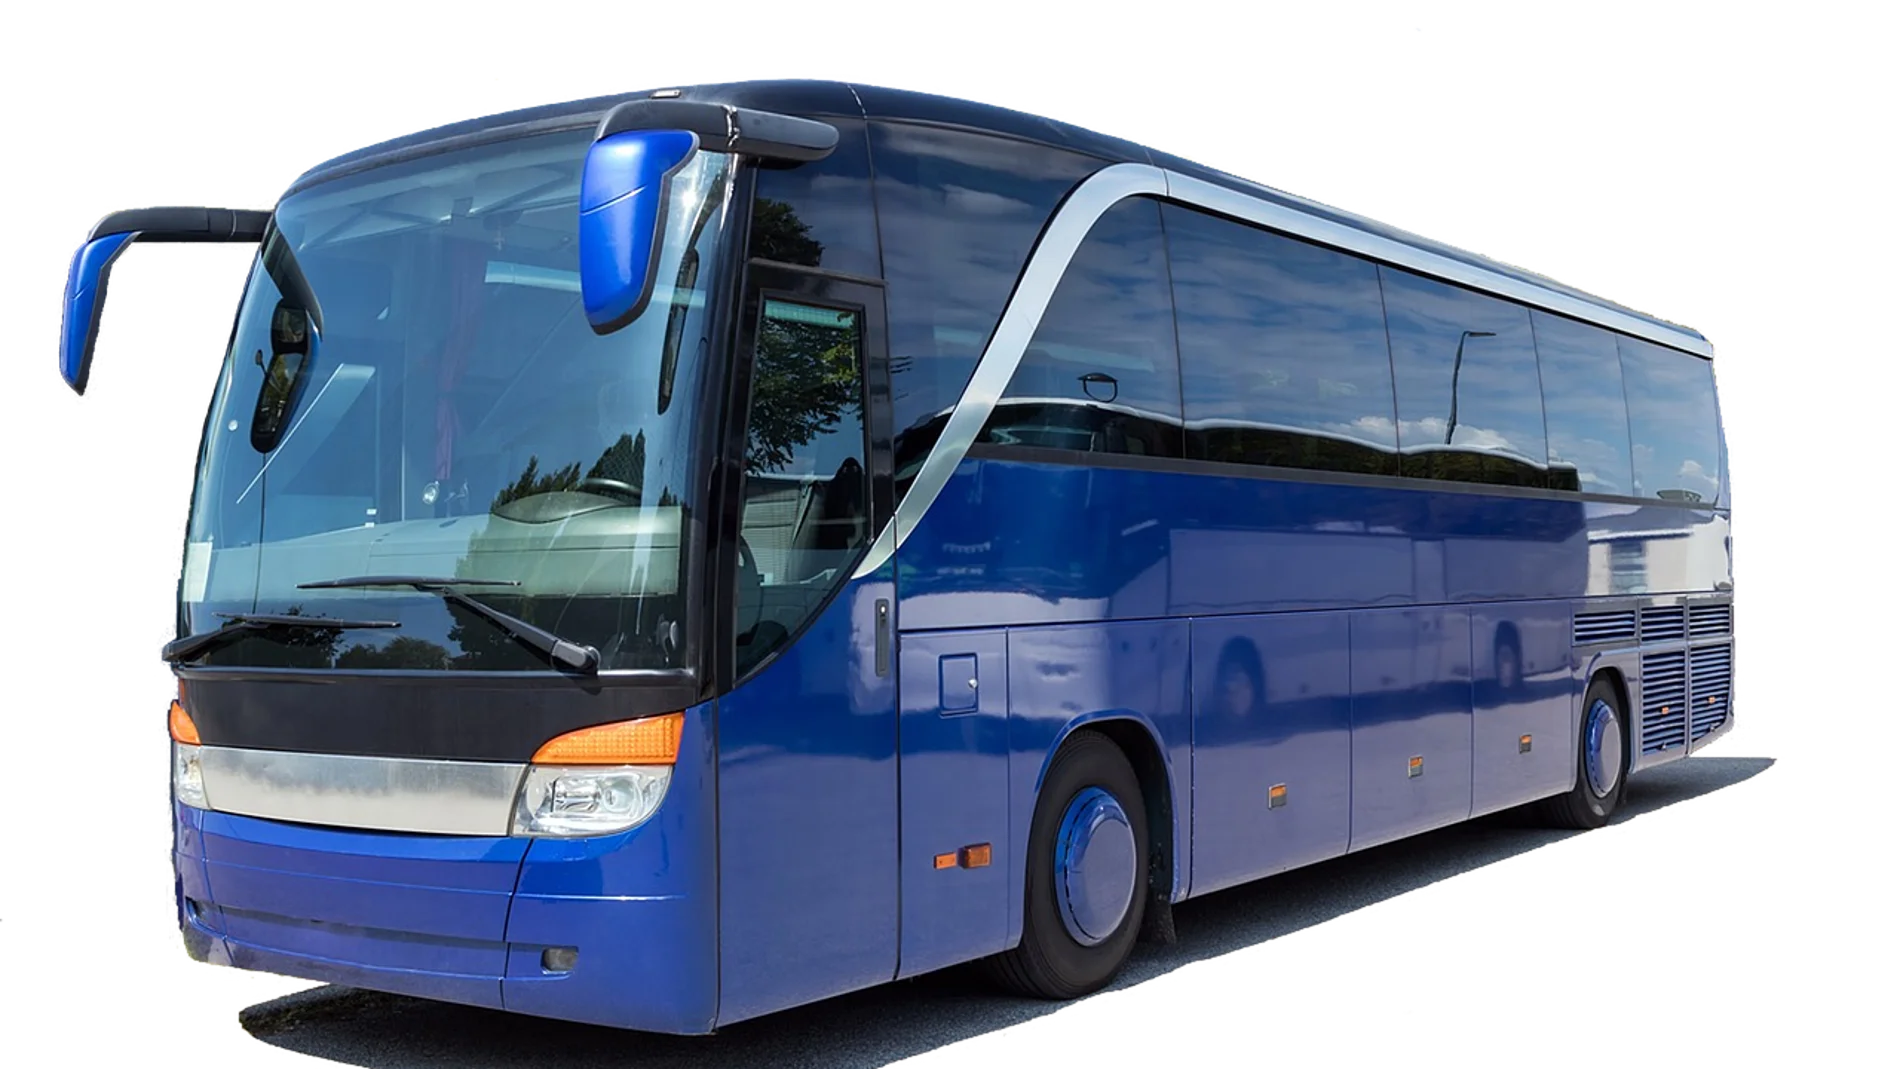 Oferta de buscan de autobús sueldos de 1.500 euros